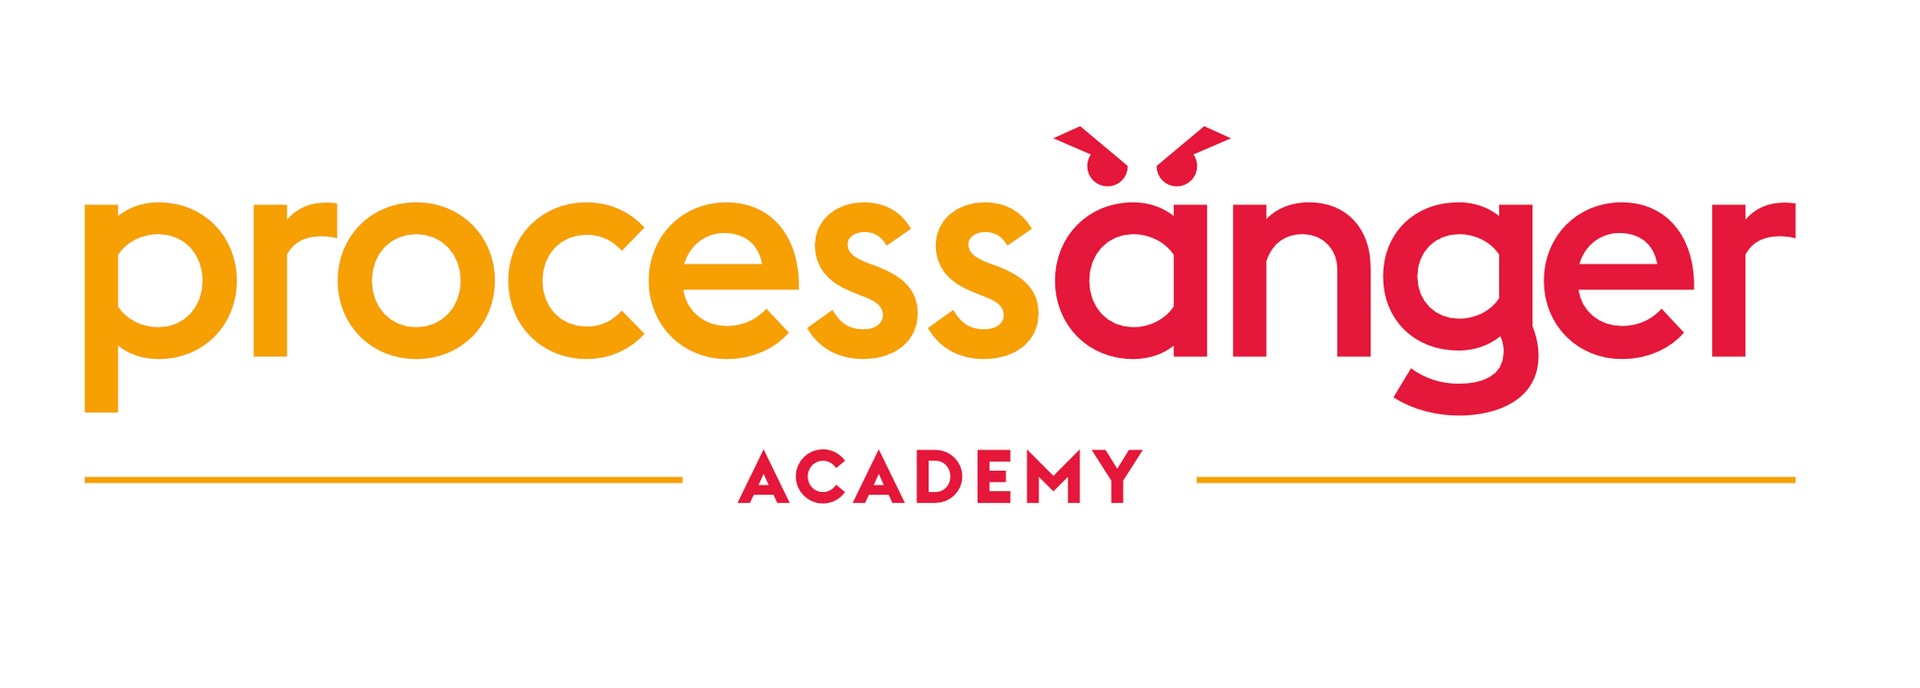 Anti Ärger Akademie logo und Marke